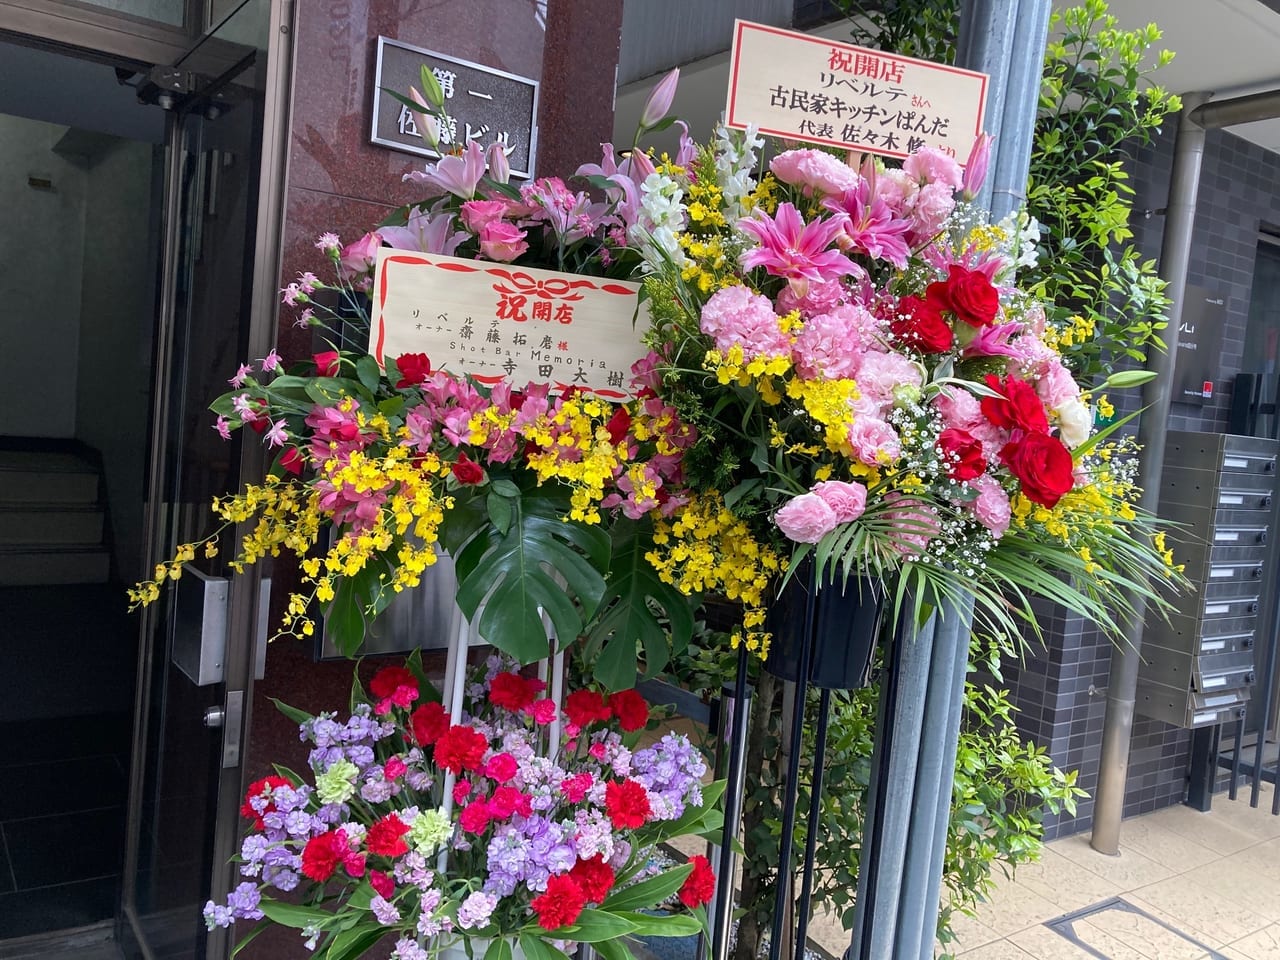 ラーメン屋GUTON横に開店をお祝いするお花が！どんなお店がオープンした？？